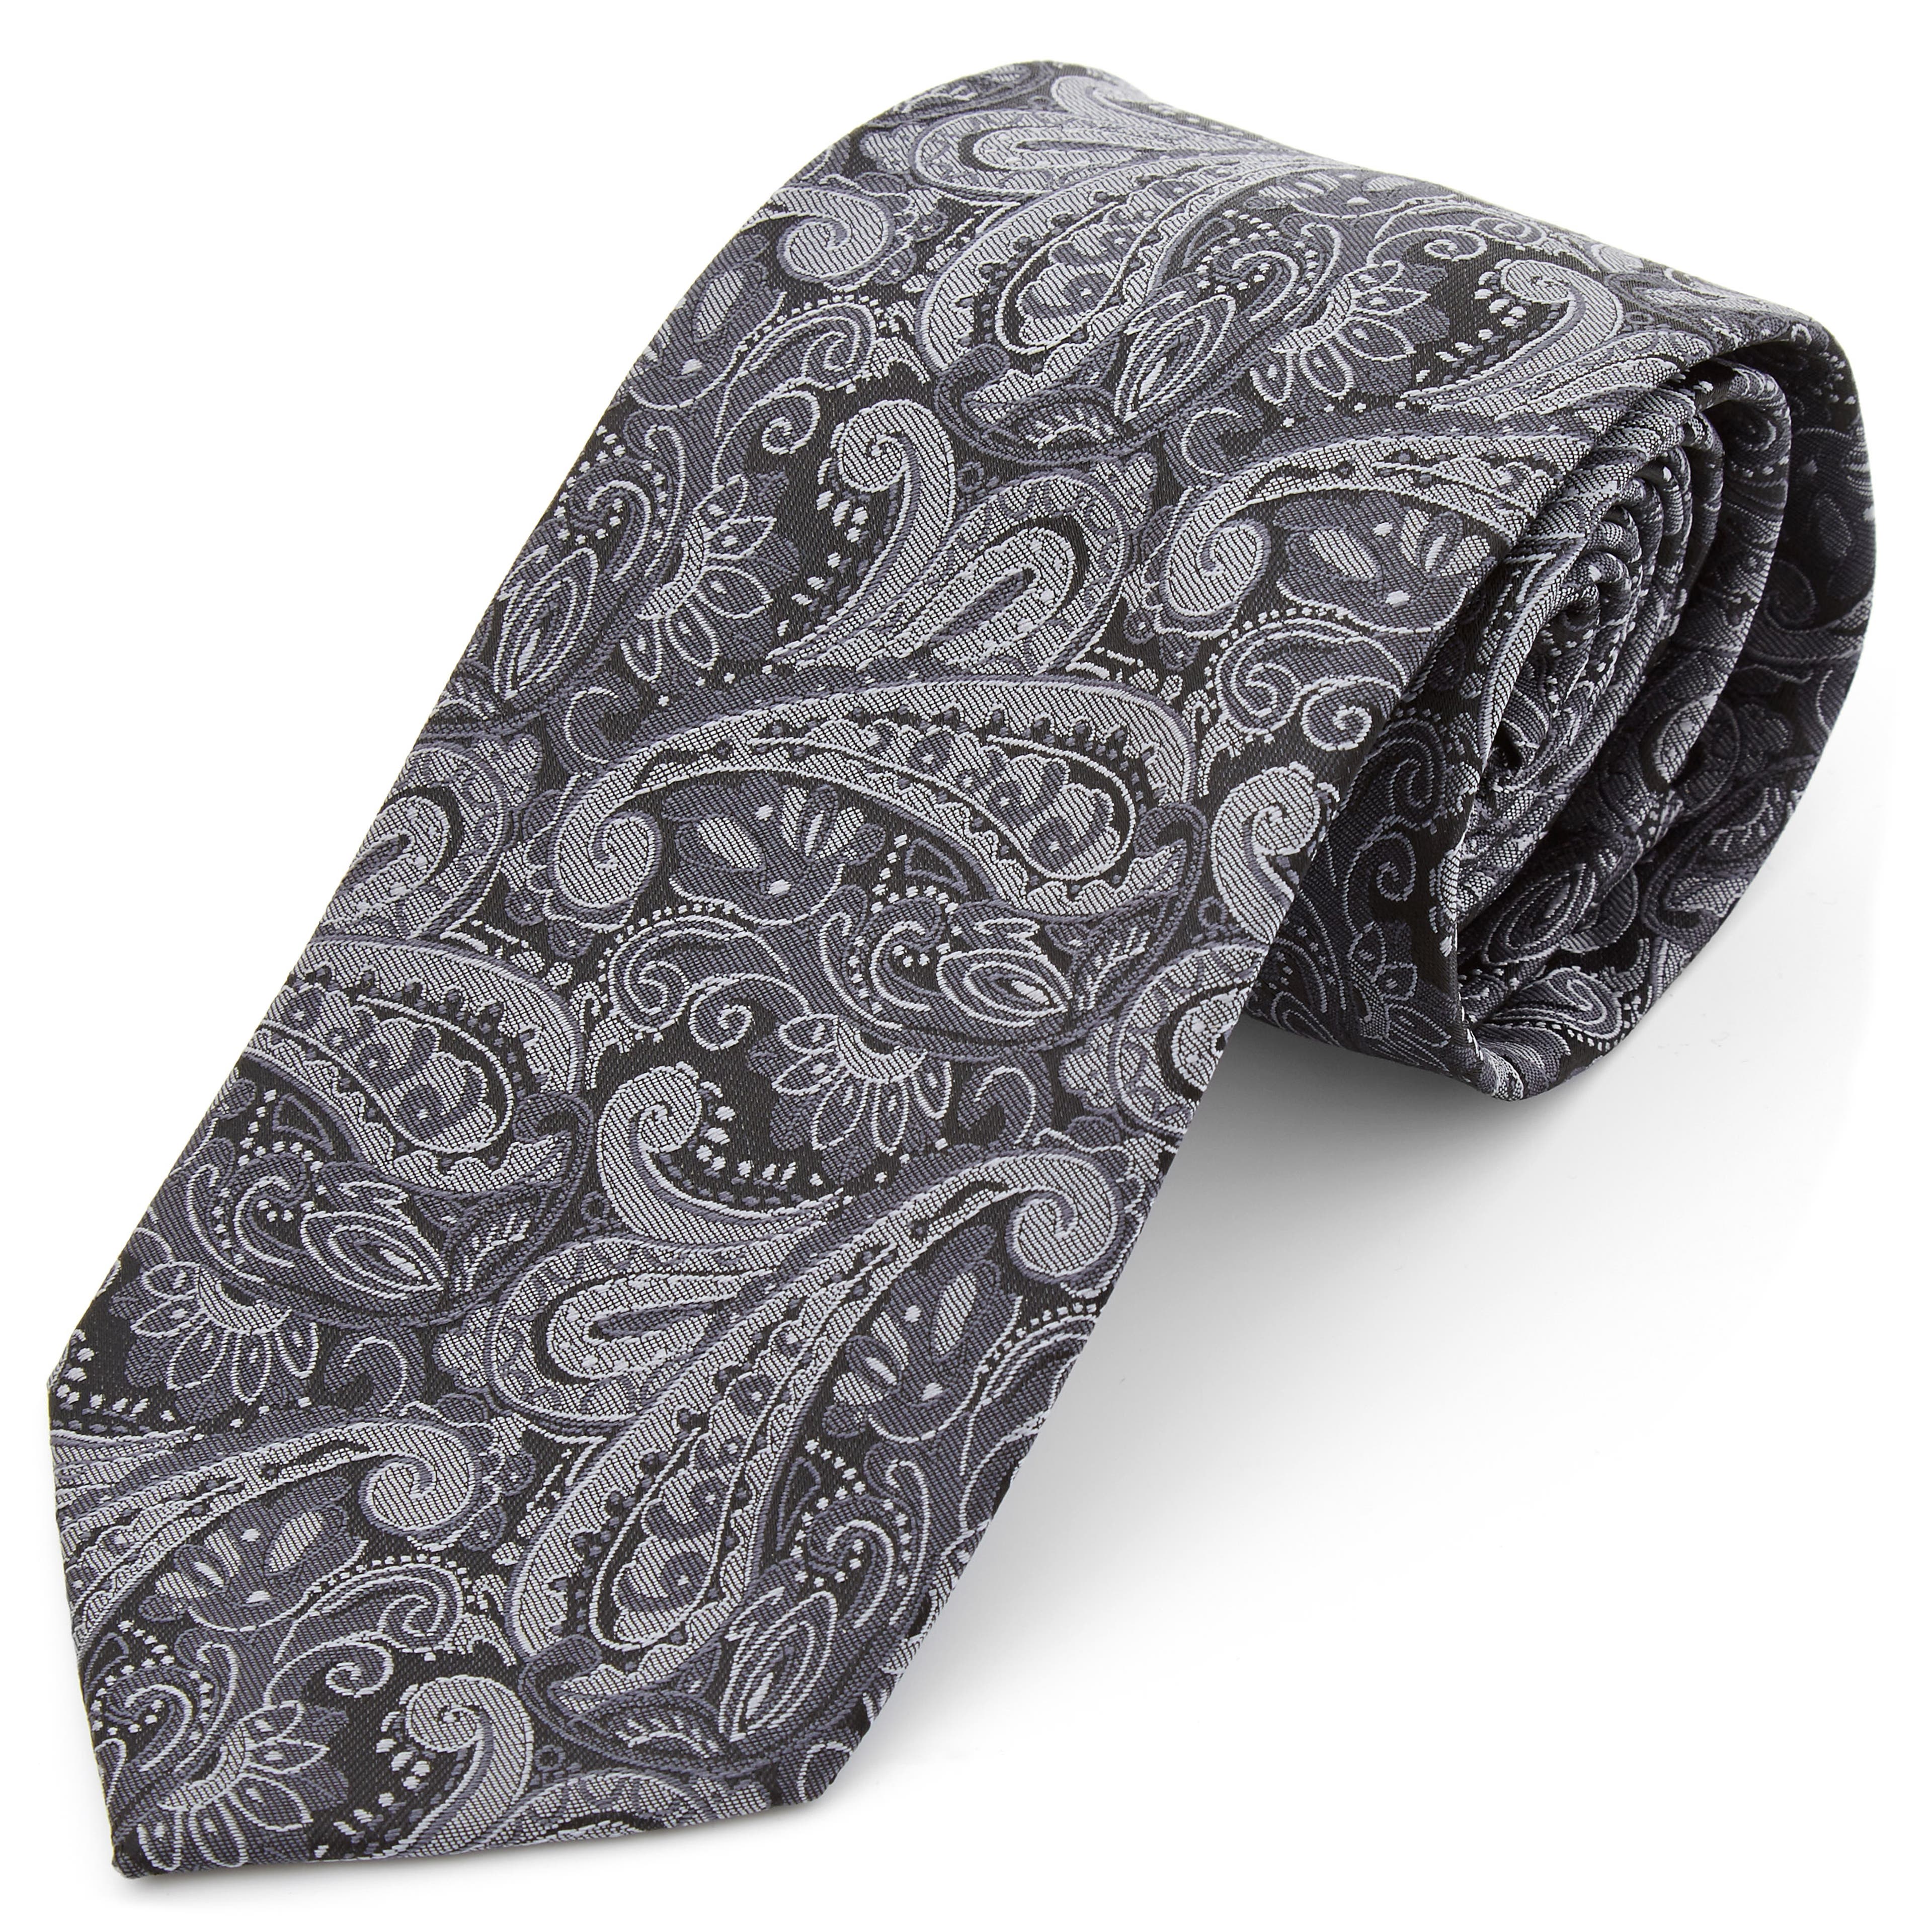 Széles, ezüstszürke kasmírmintás nyakkendő